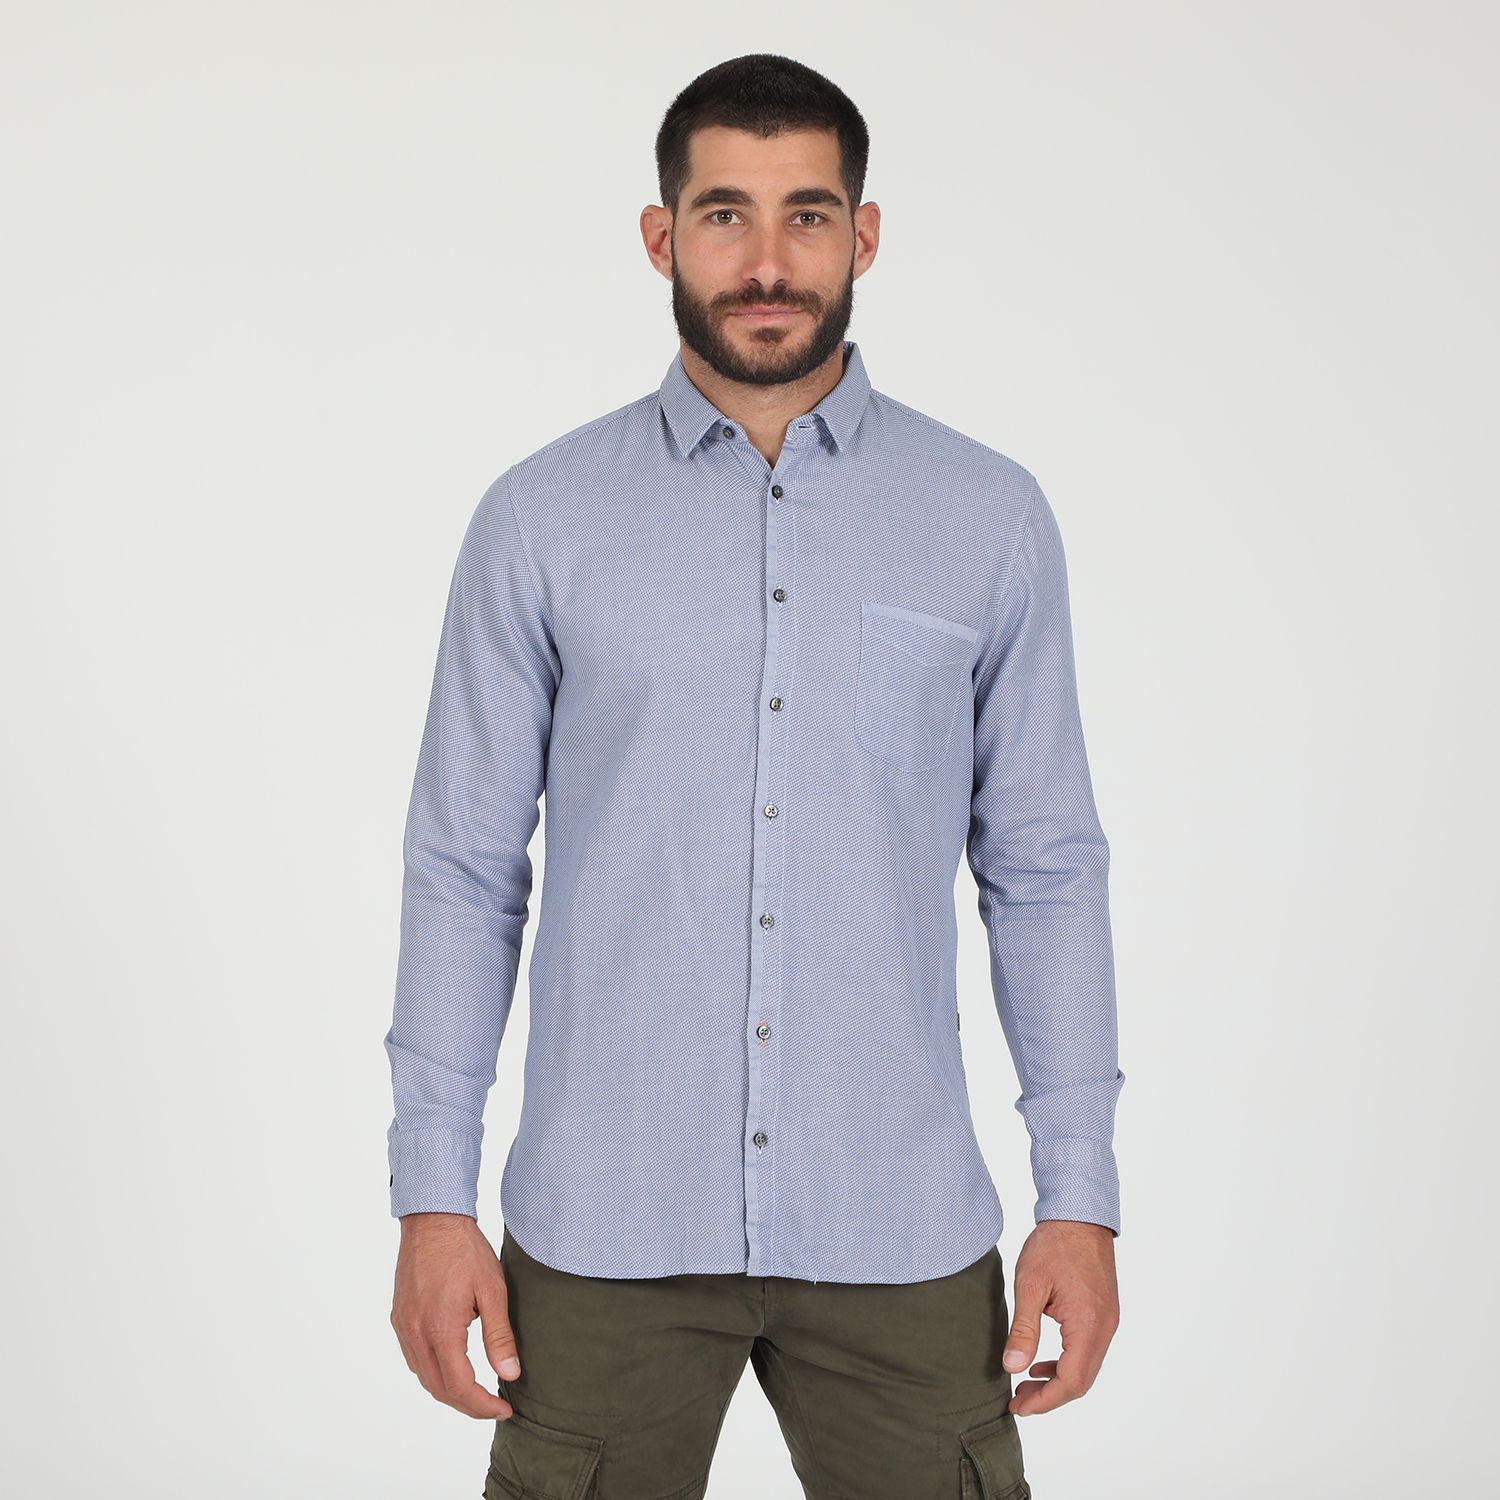 Ανδρικά/Ρούχα/Πουκάμισα/Μακρυμάνικα BOSS - Ανδρικό πουκάμισο BOSS CASUAL MAGNETON μπλε λευκό